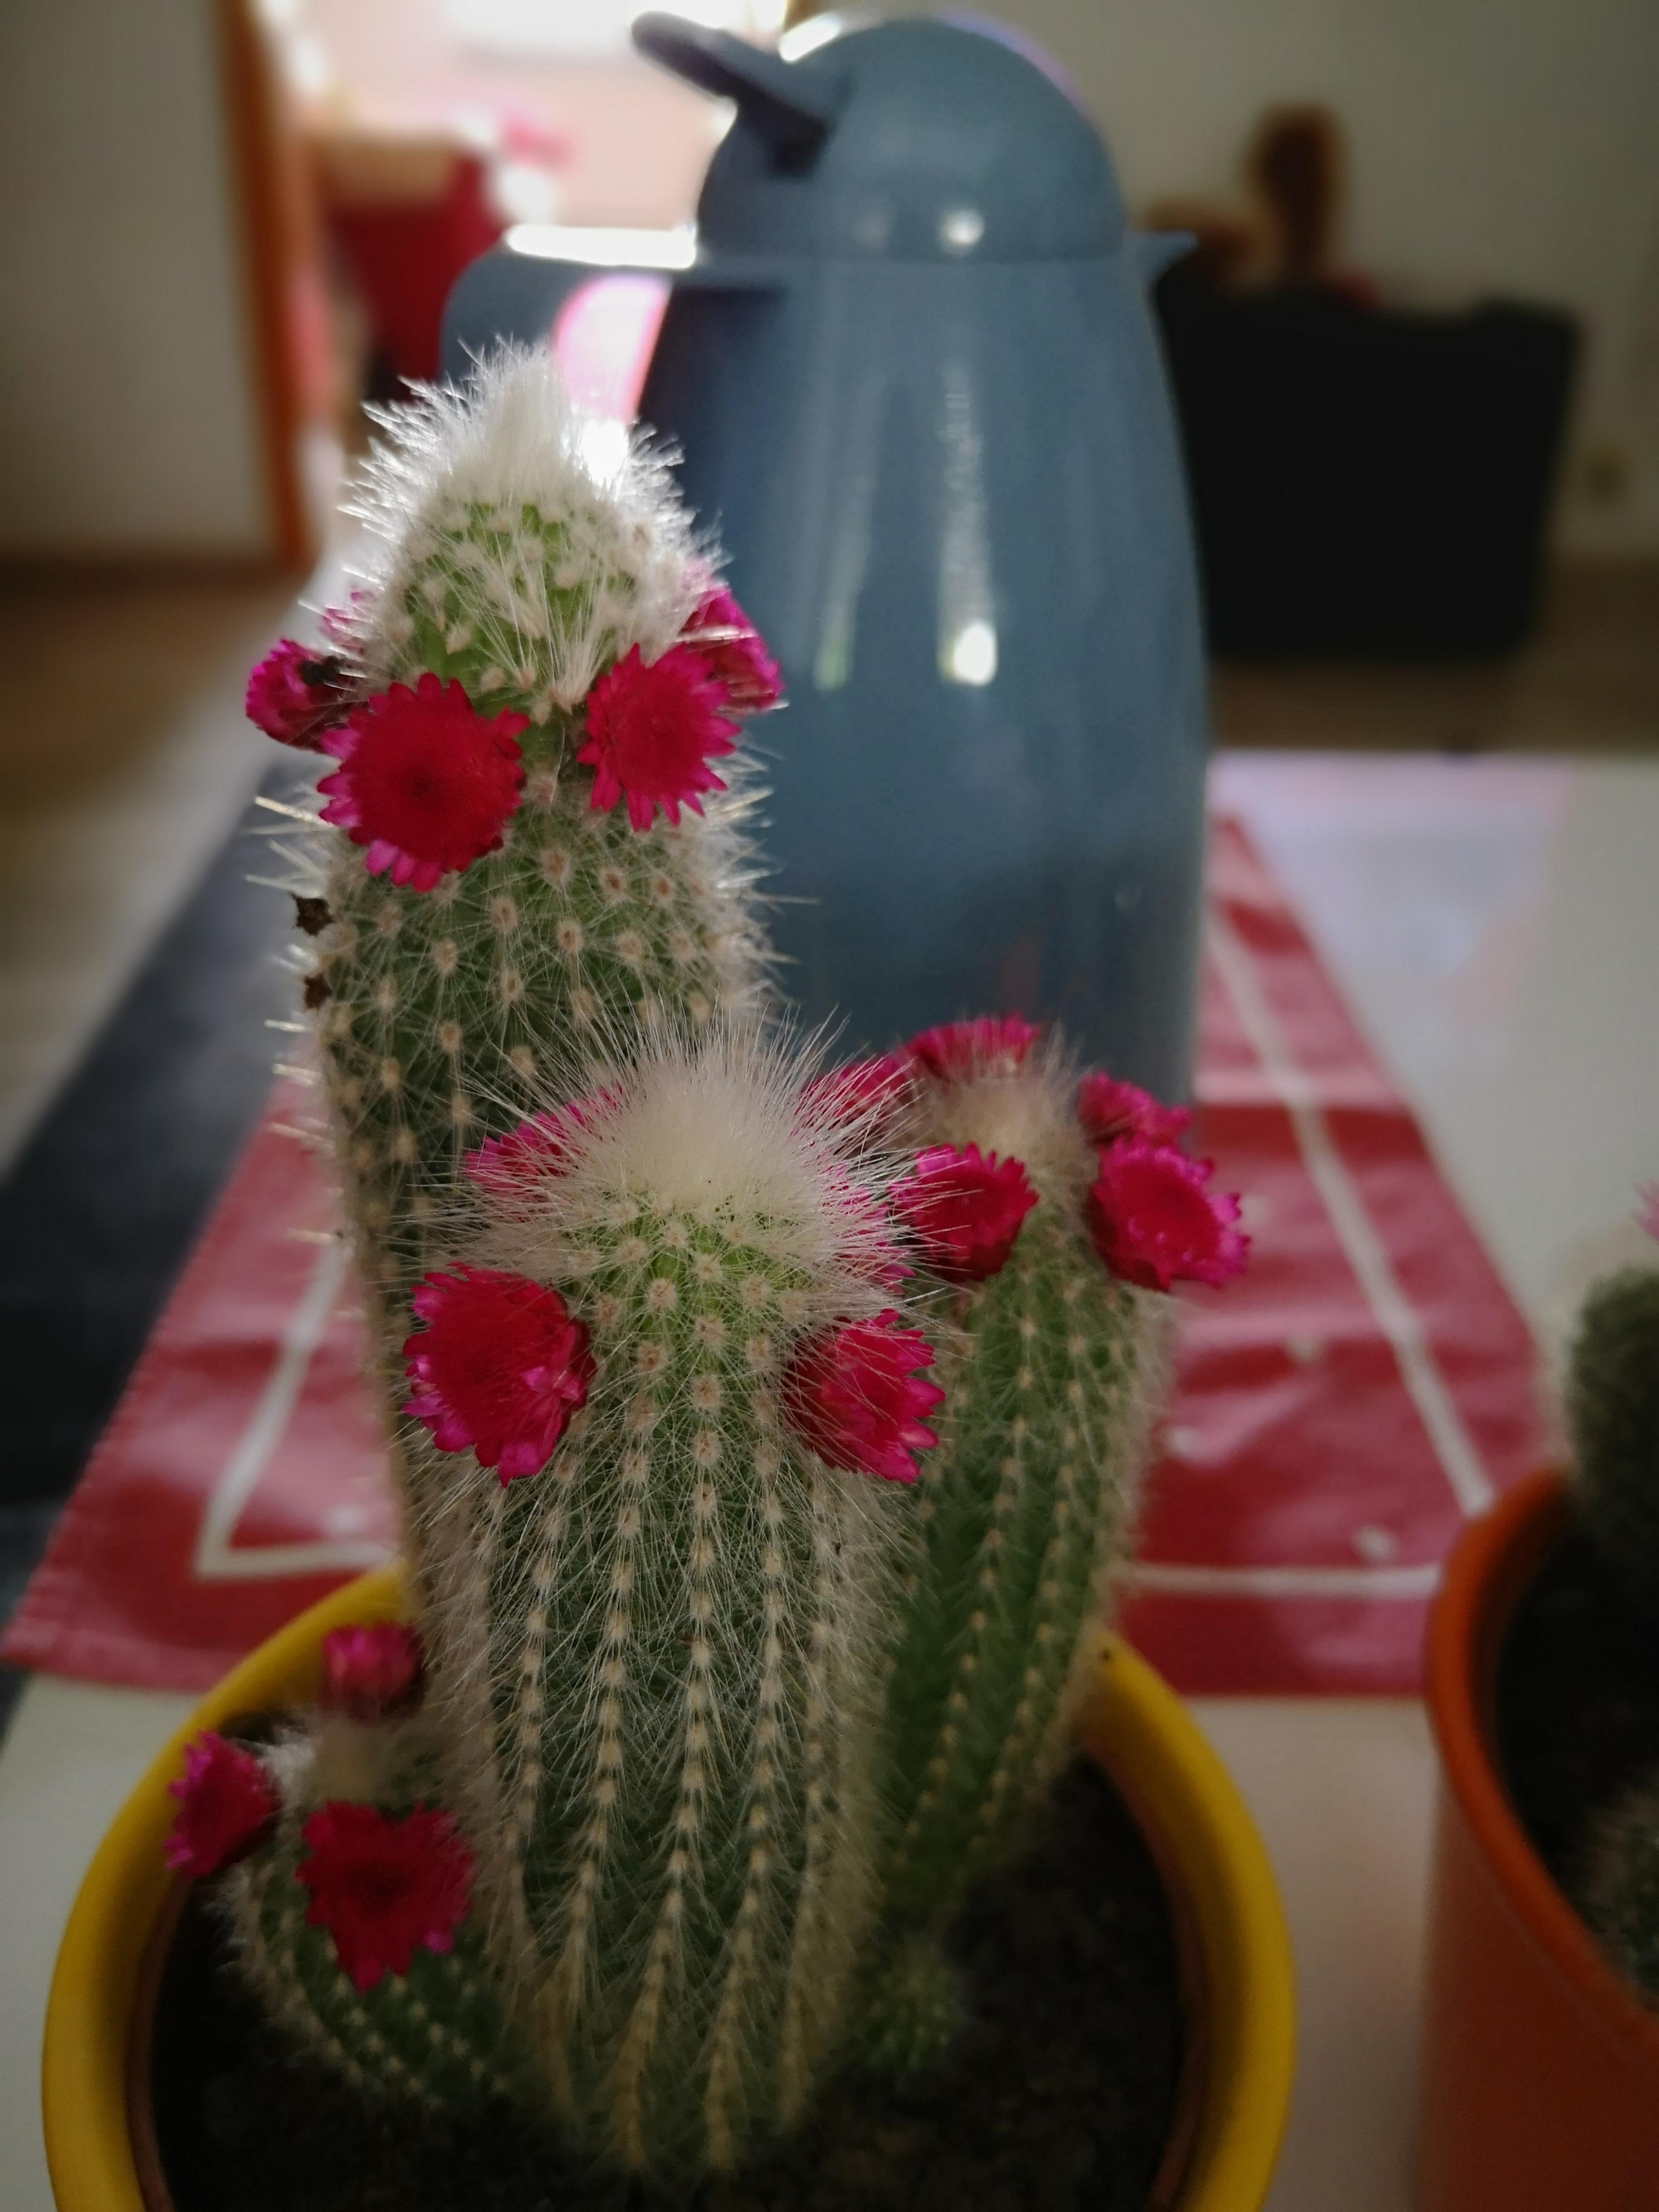 Die süssesten Kakteen, die ich gesehen habe... 🌵
#kaktus #blüte 